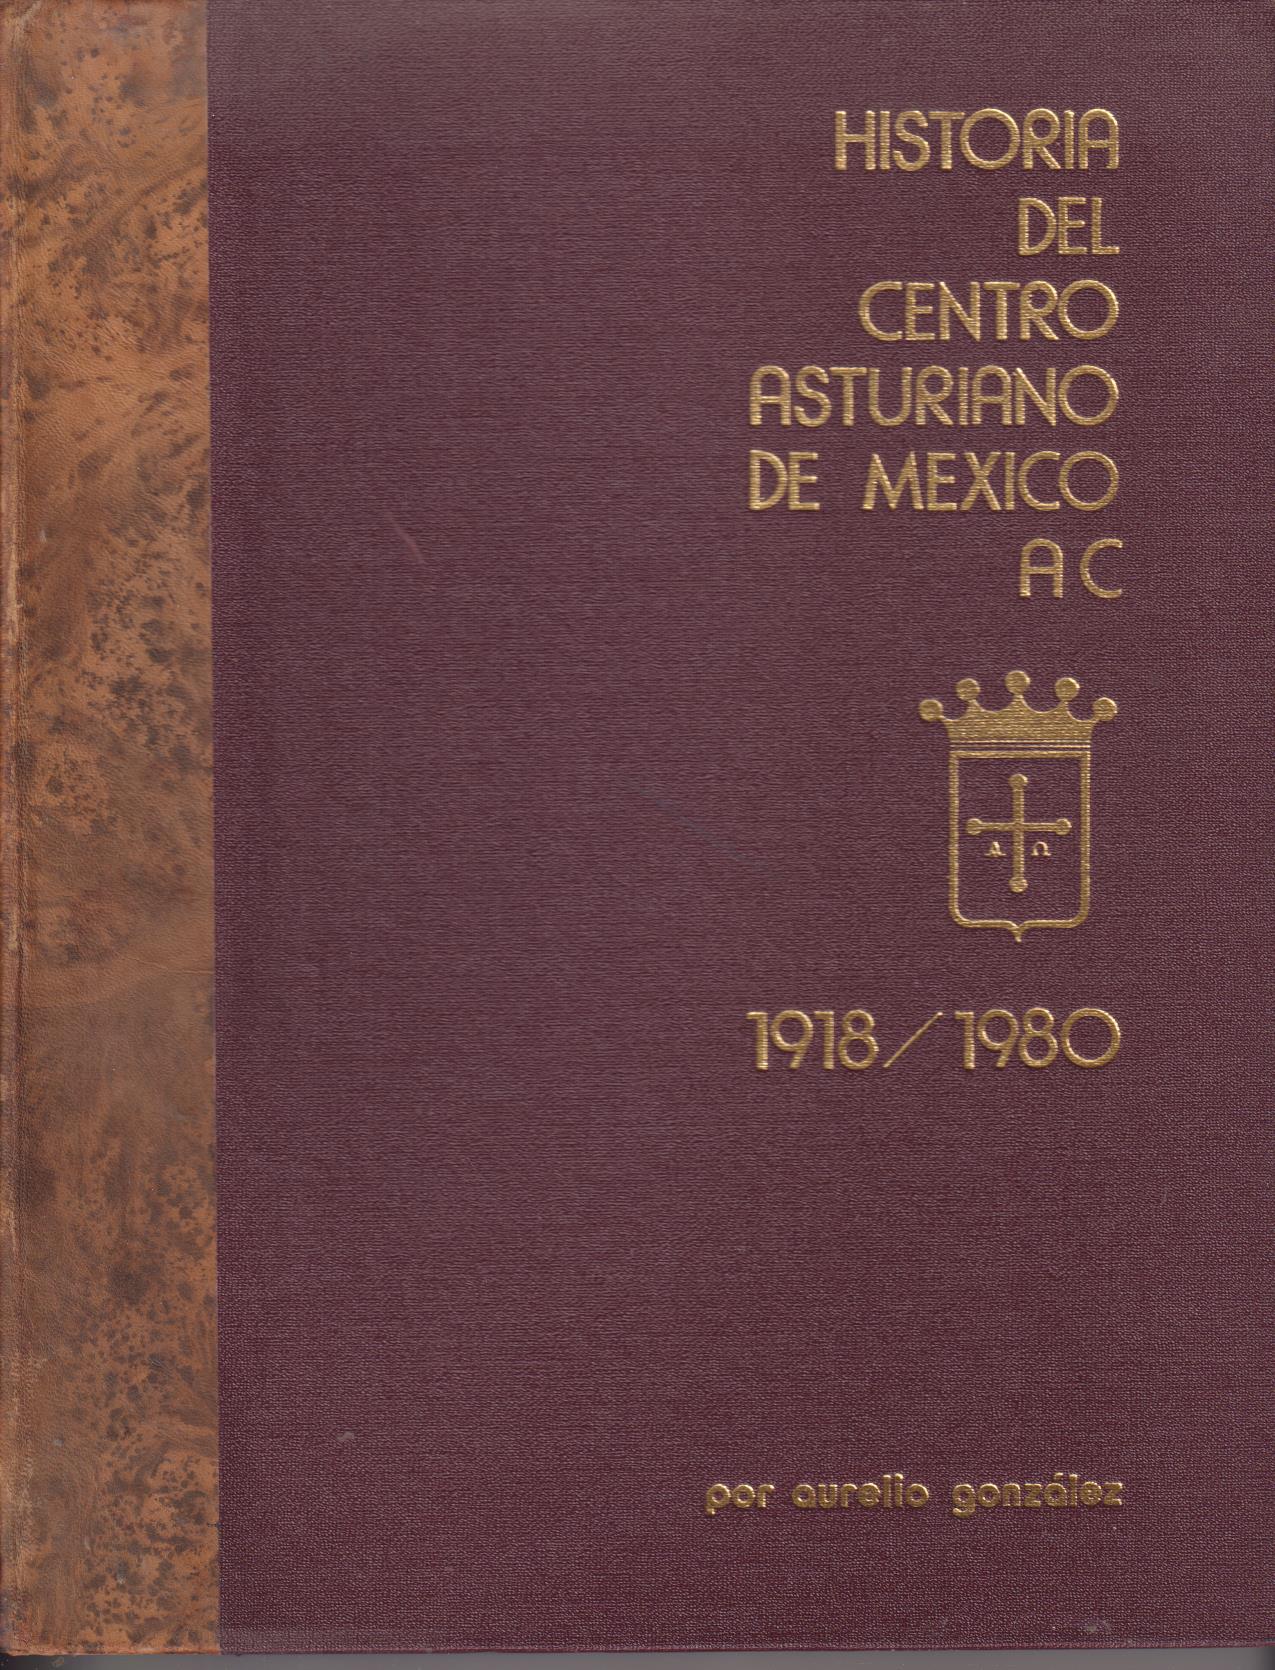 Historia del Centro Asturiano de México 1918-1980 poe Aurelio González. 1ª Edición 1981